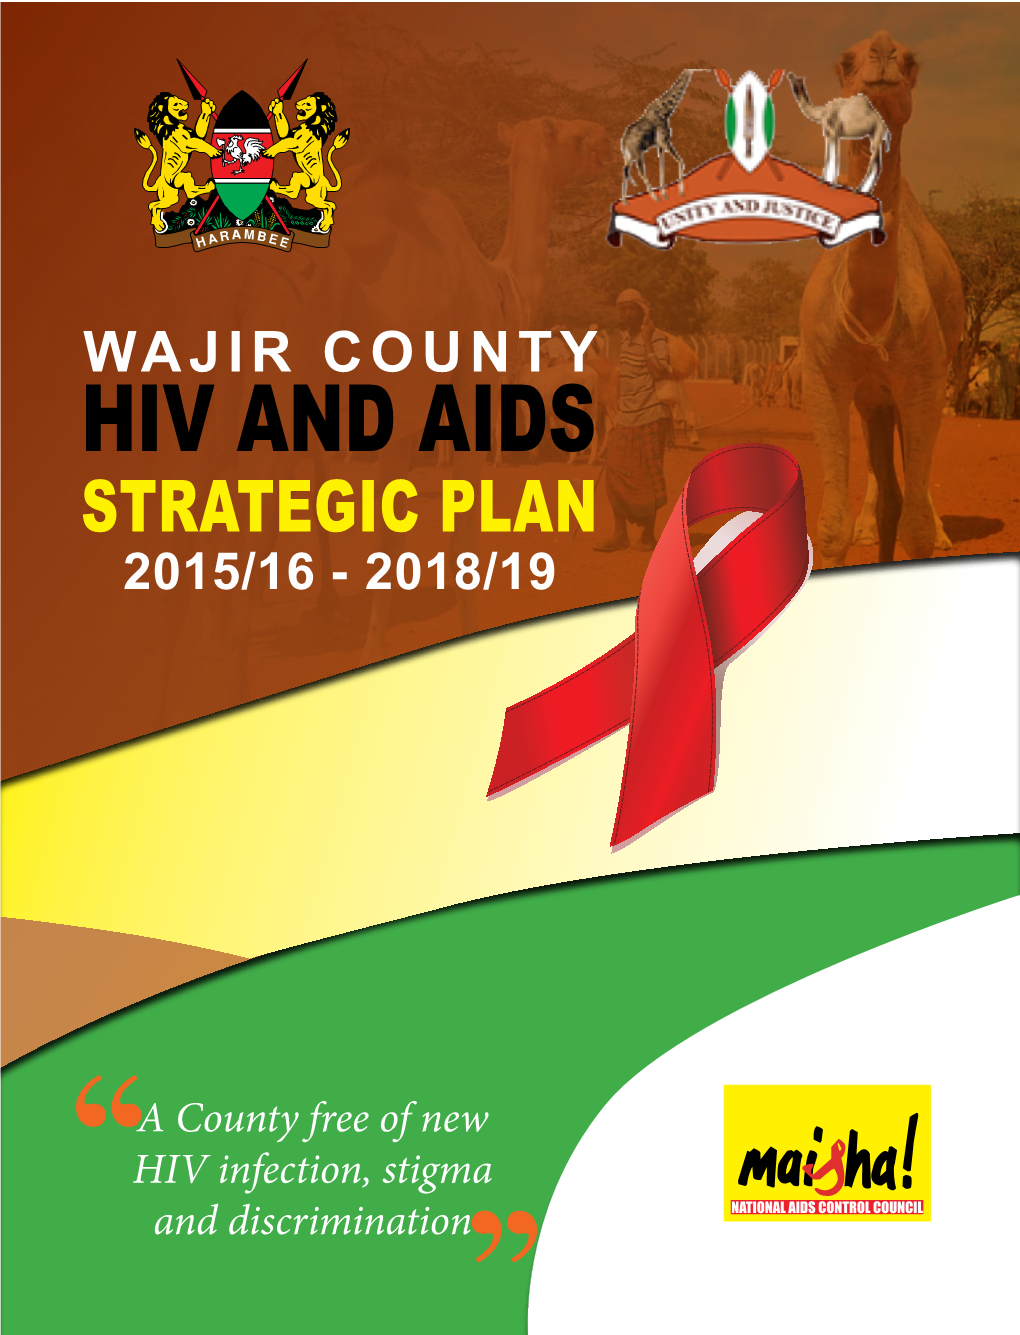 Wajir County Hiv and Aids Strategic Plan 2015/16 - 2018/19